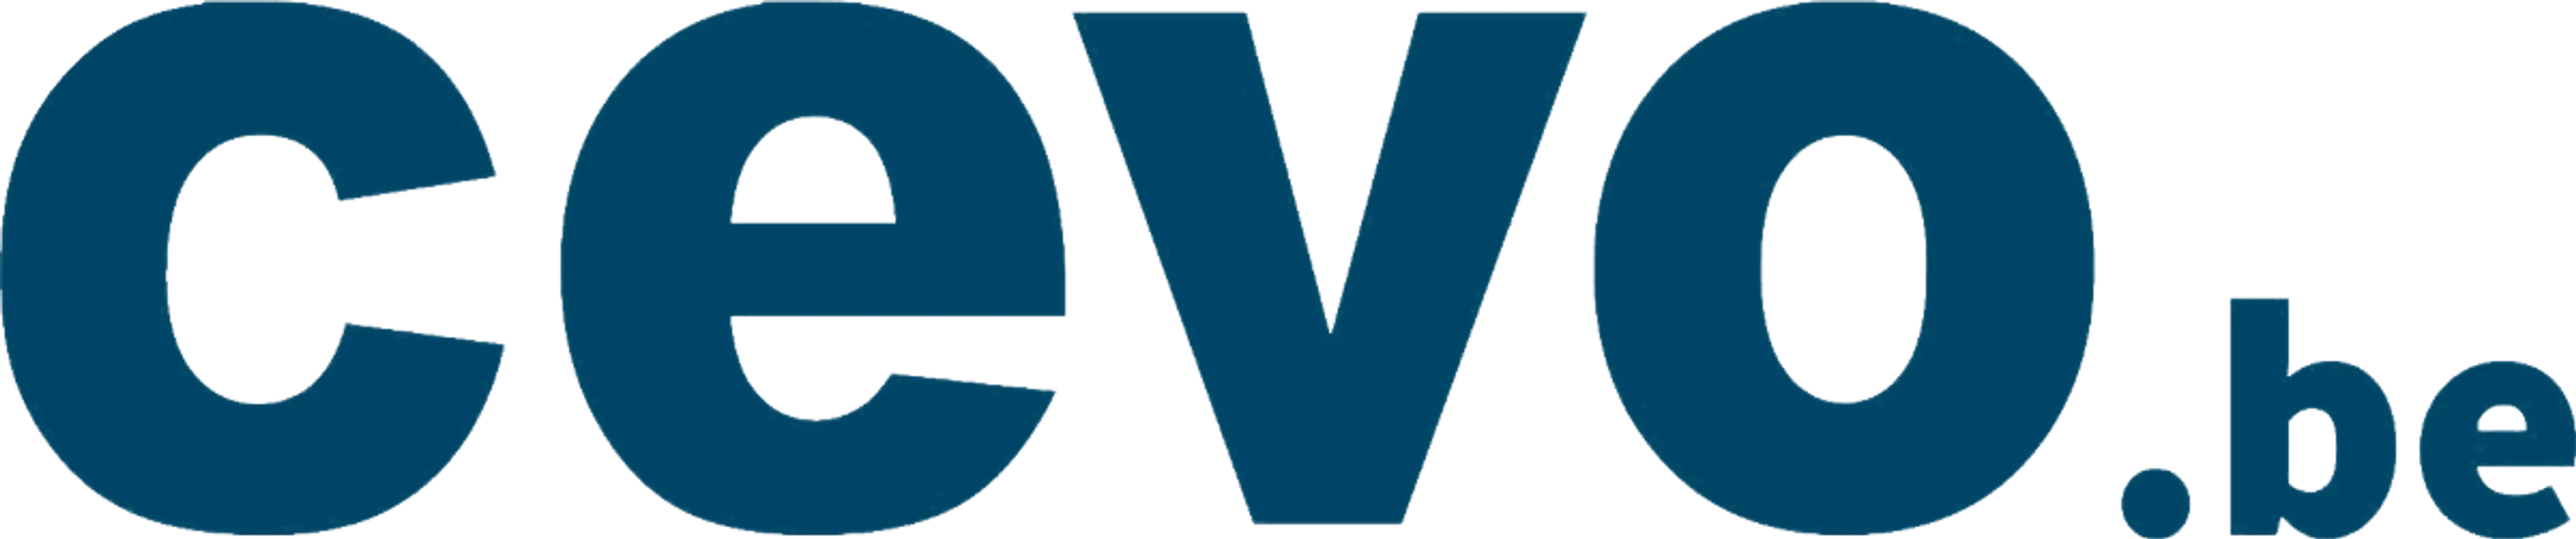 CEVO logo